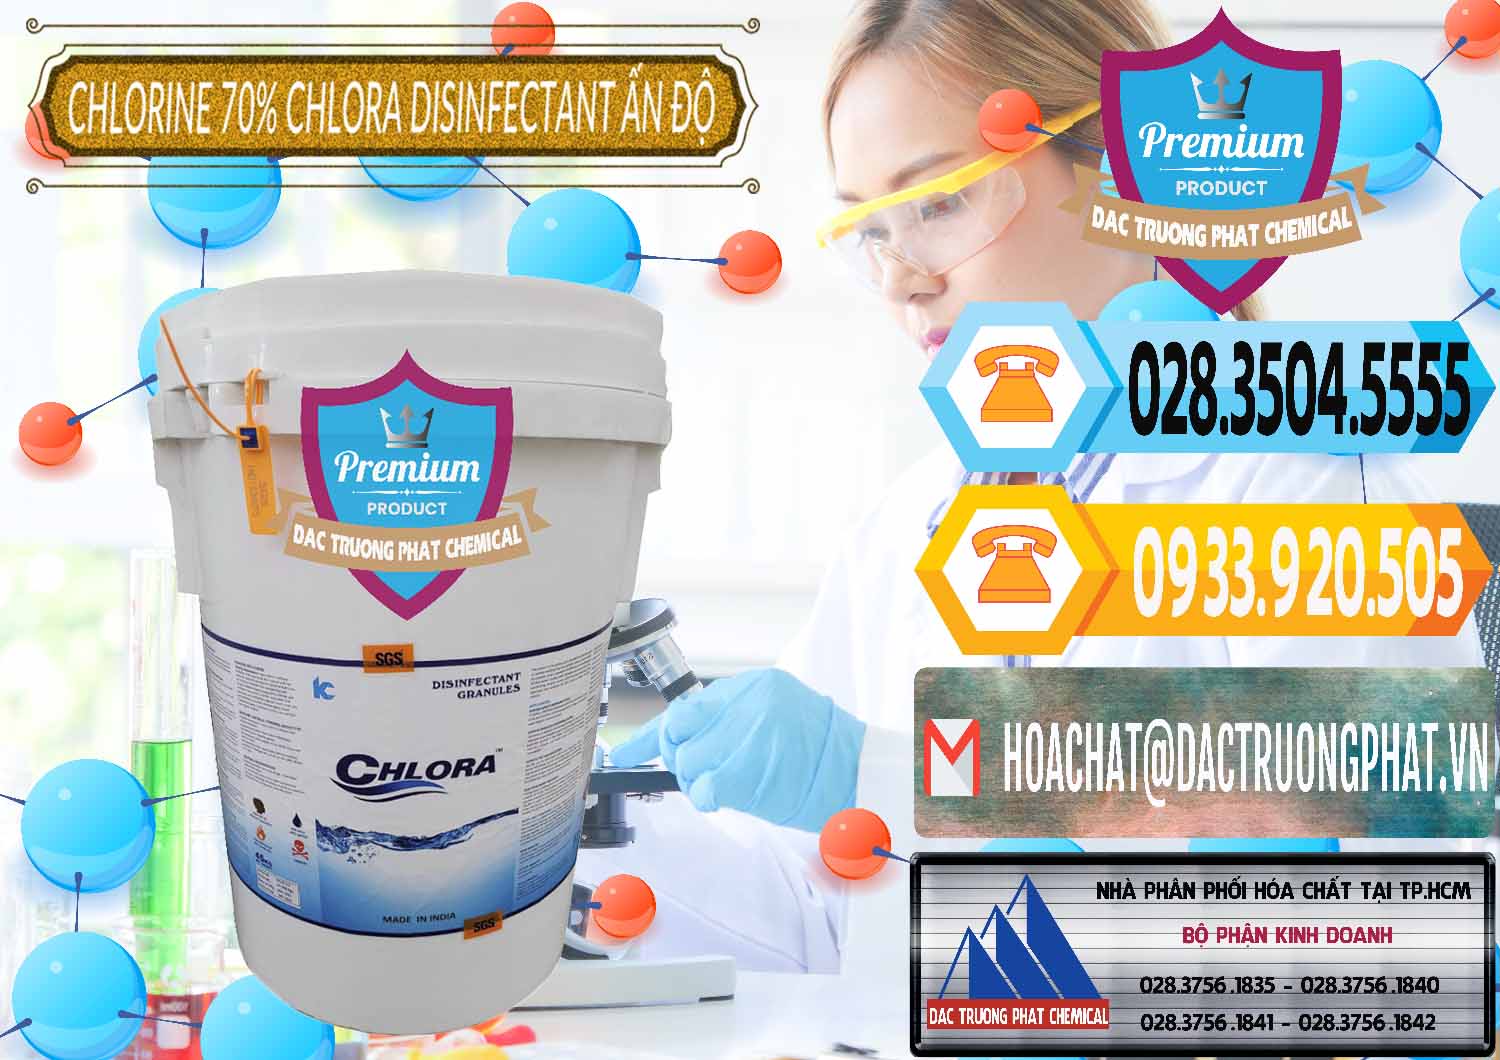 Chuyên cung ứng _ bán Chlorine – Clorin 70% Chlora Disinfectant Ấn Độ India - 0213 - Nơi cung cấp ( nhập khẩu ) hóa chất tại TP.HCM - hoachattayrua.net